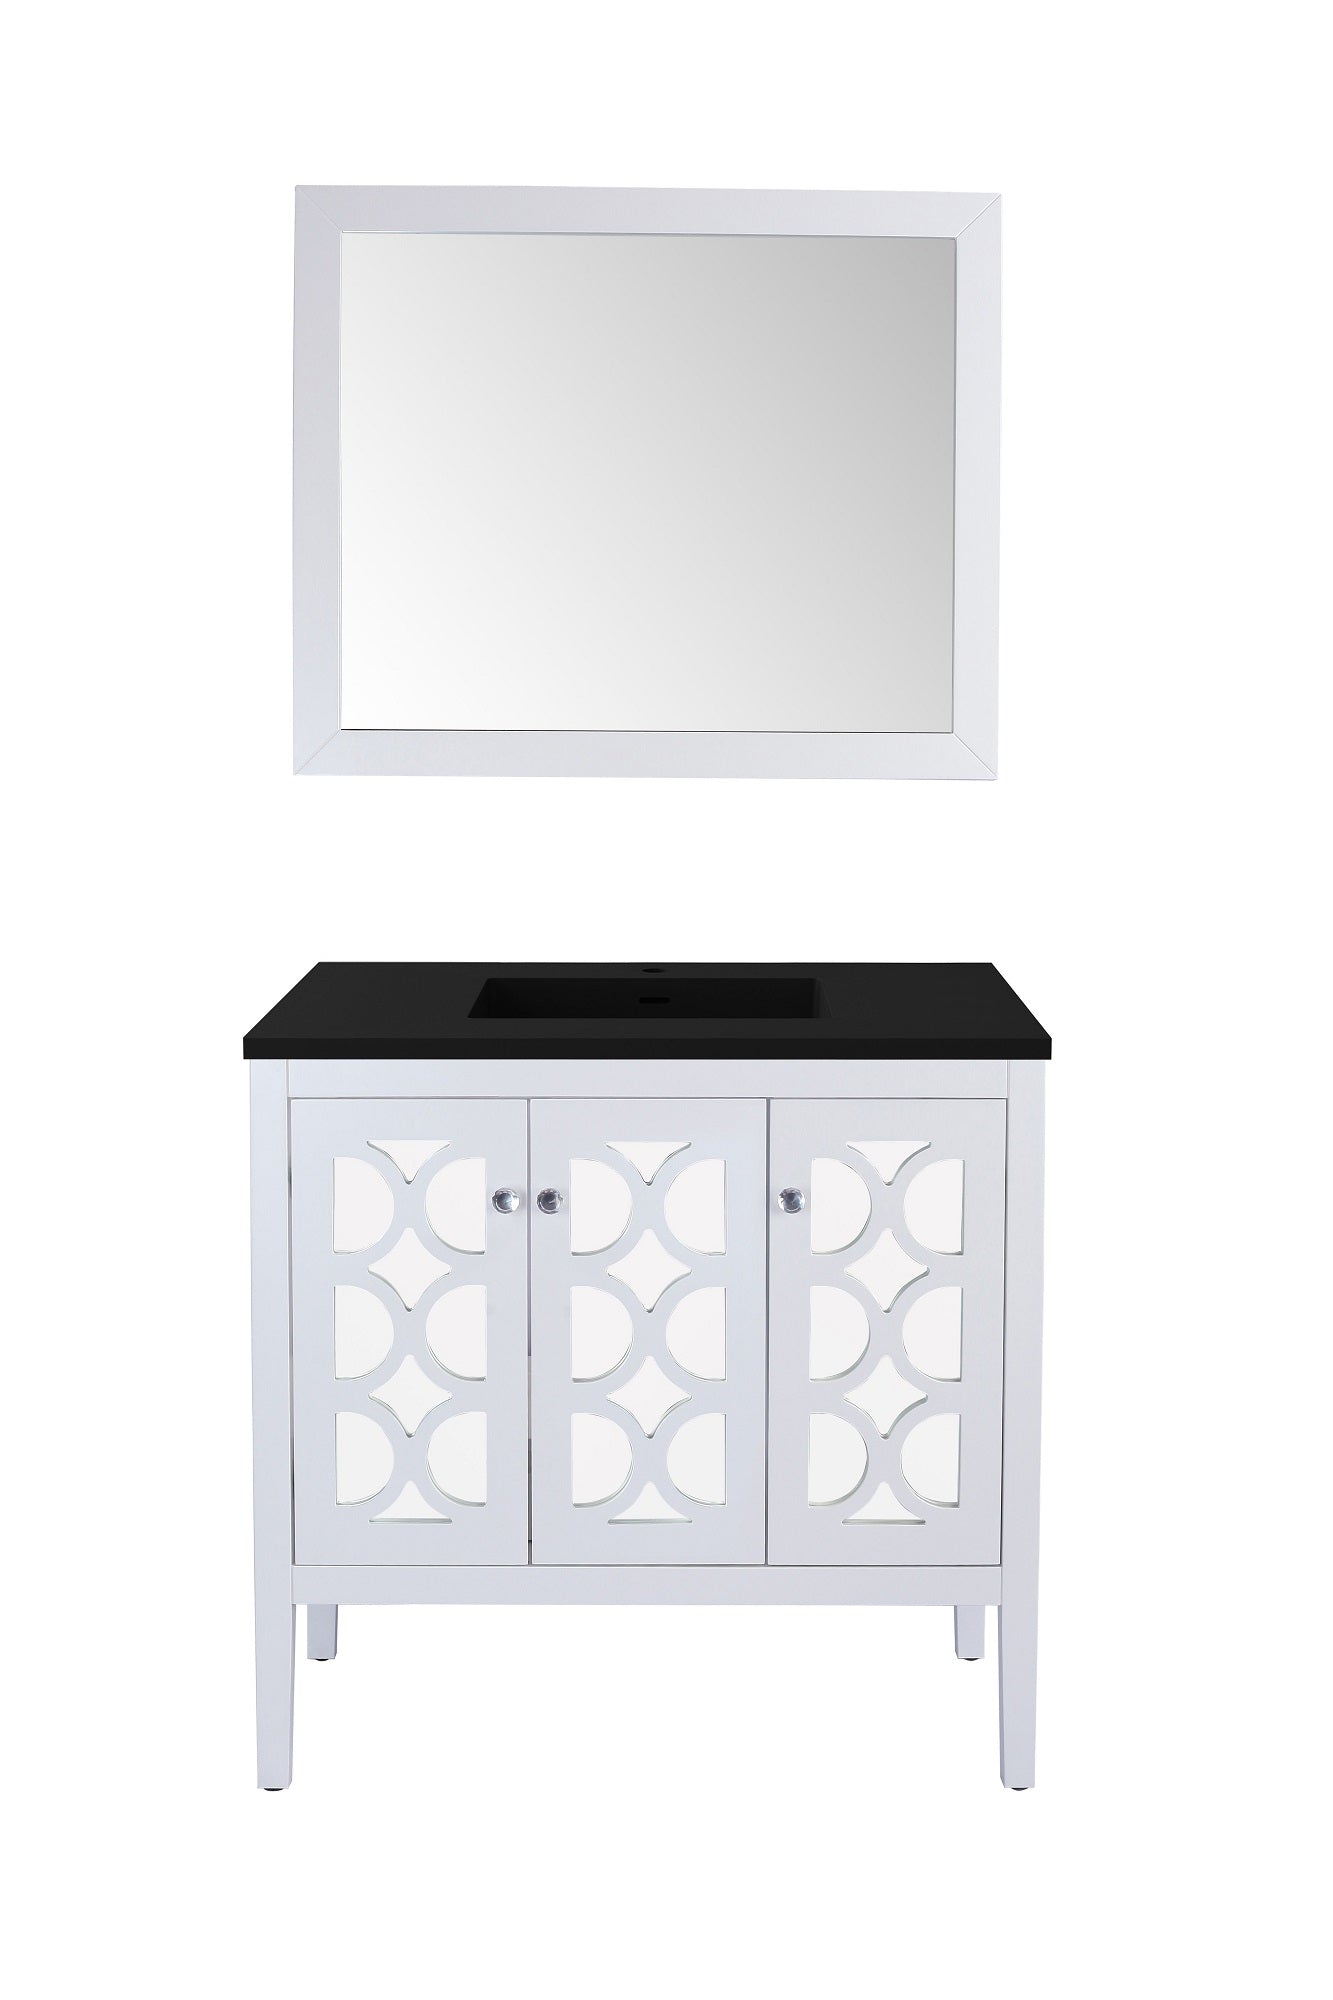 Mediterraneo - 36 - Cabinet with VIVA Stone Solid Surface Countertop - Luxe Bathroom Vanities Luxury Bathroom Fixtures Bathroom Furniture